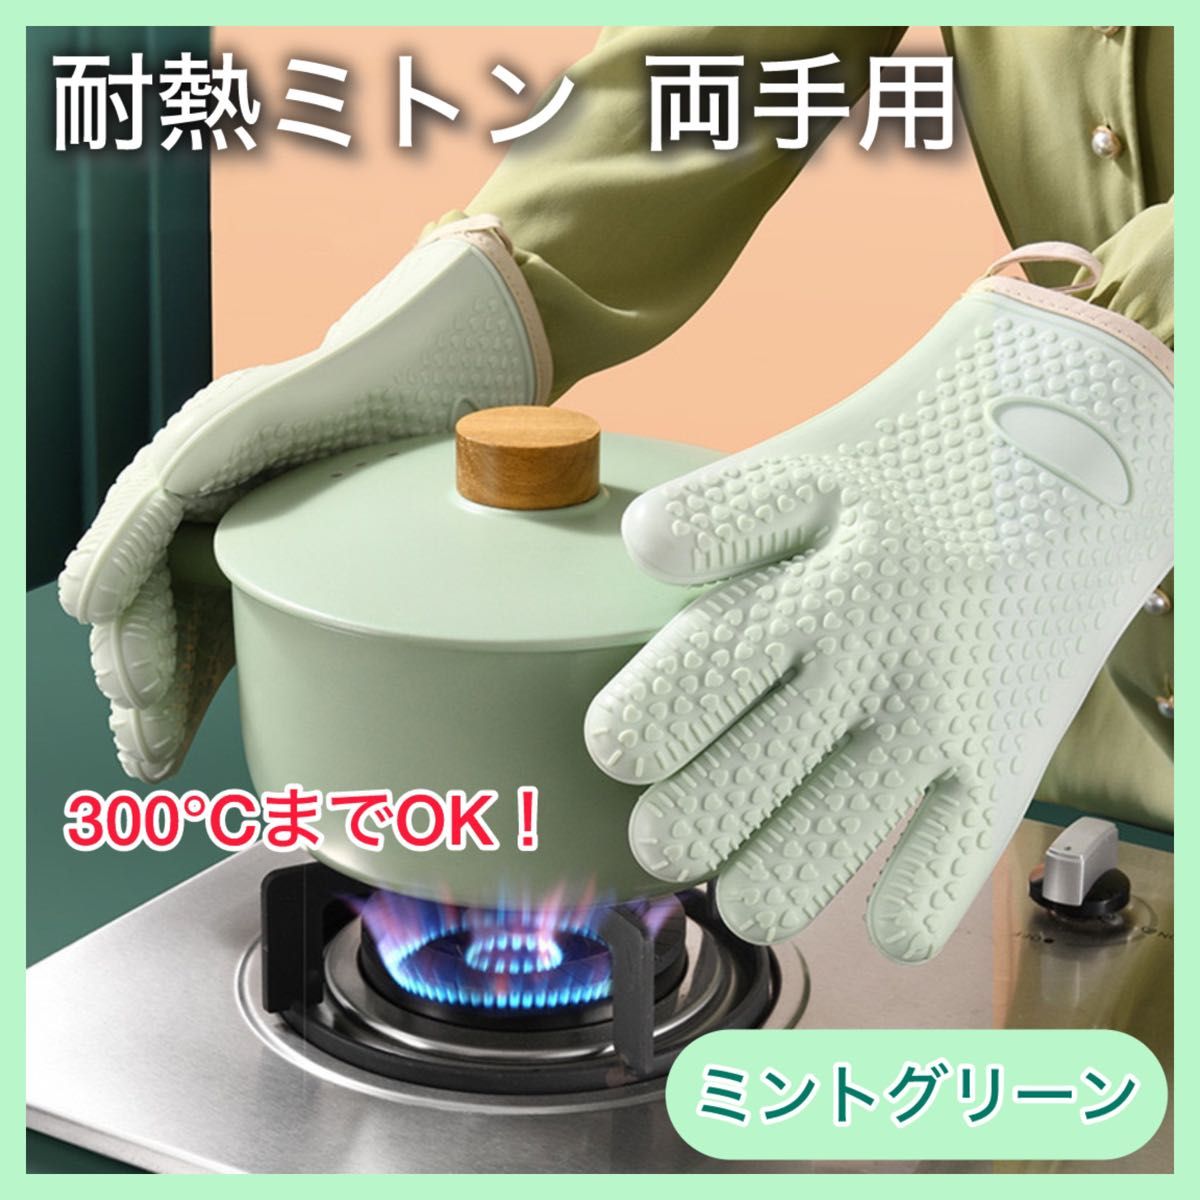 オーブンミトン 両手 グリーン 耐熱300度 防水 キッチン 手袋 シリコン